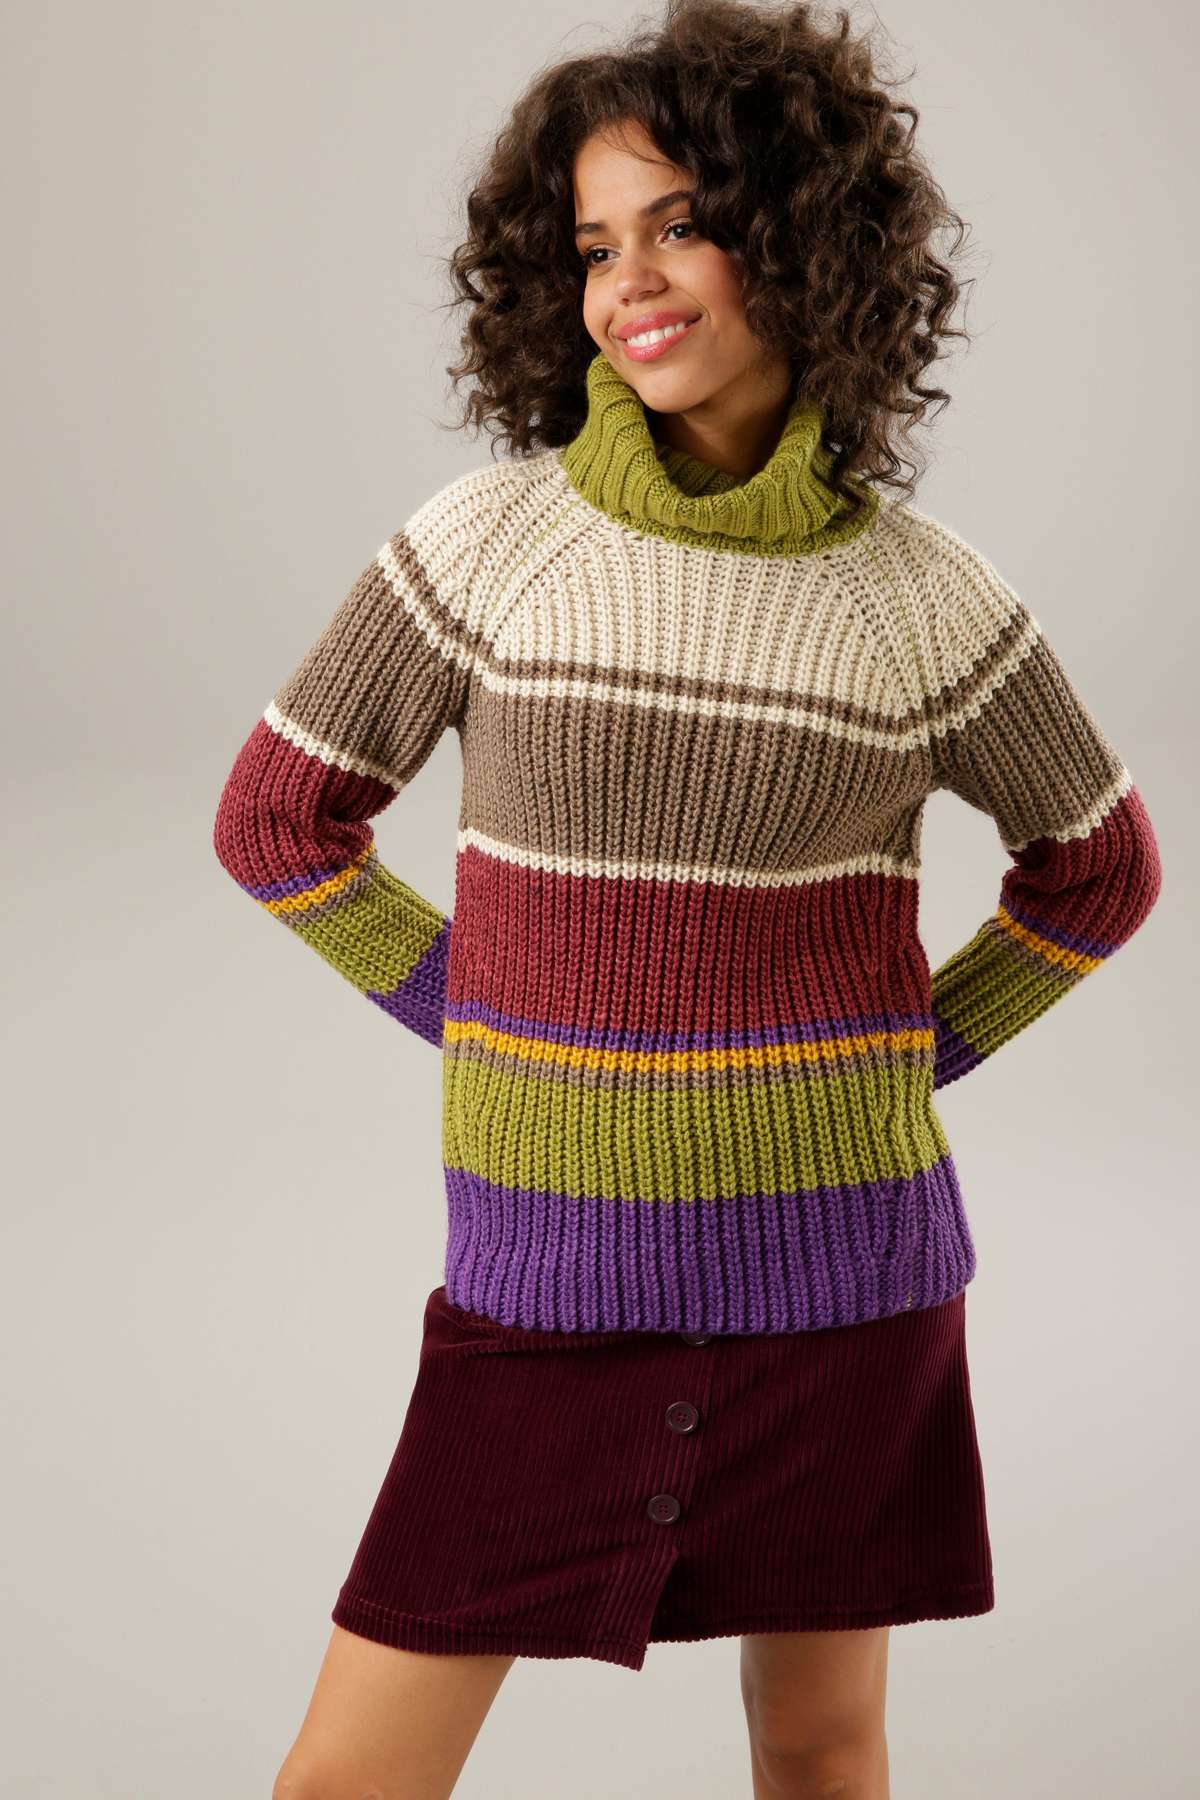 Вязаный свитер гармоничного полосатого дизайна.